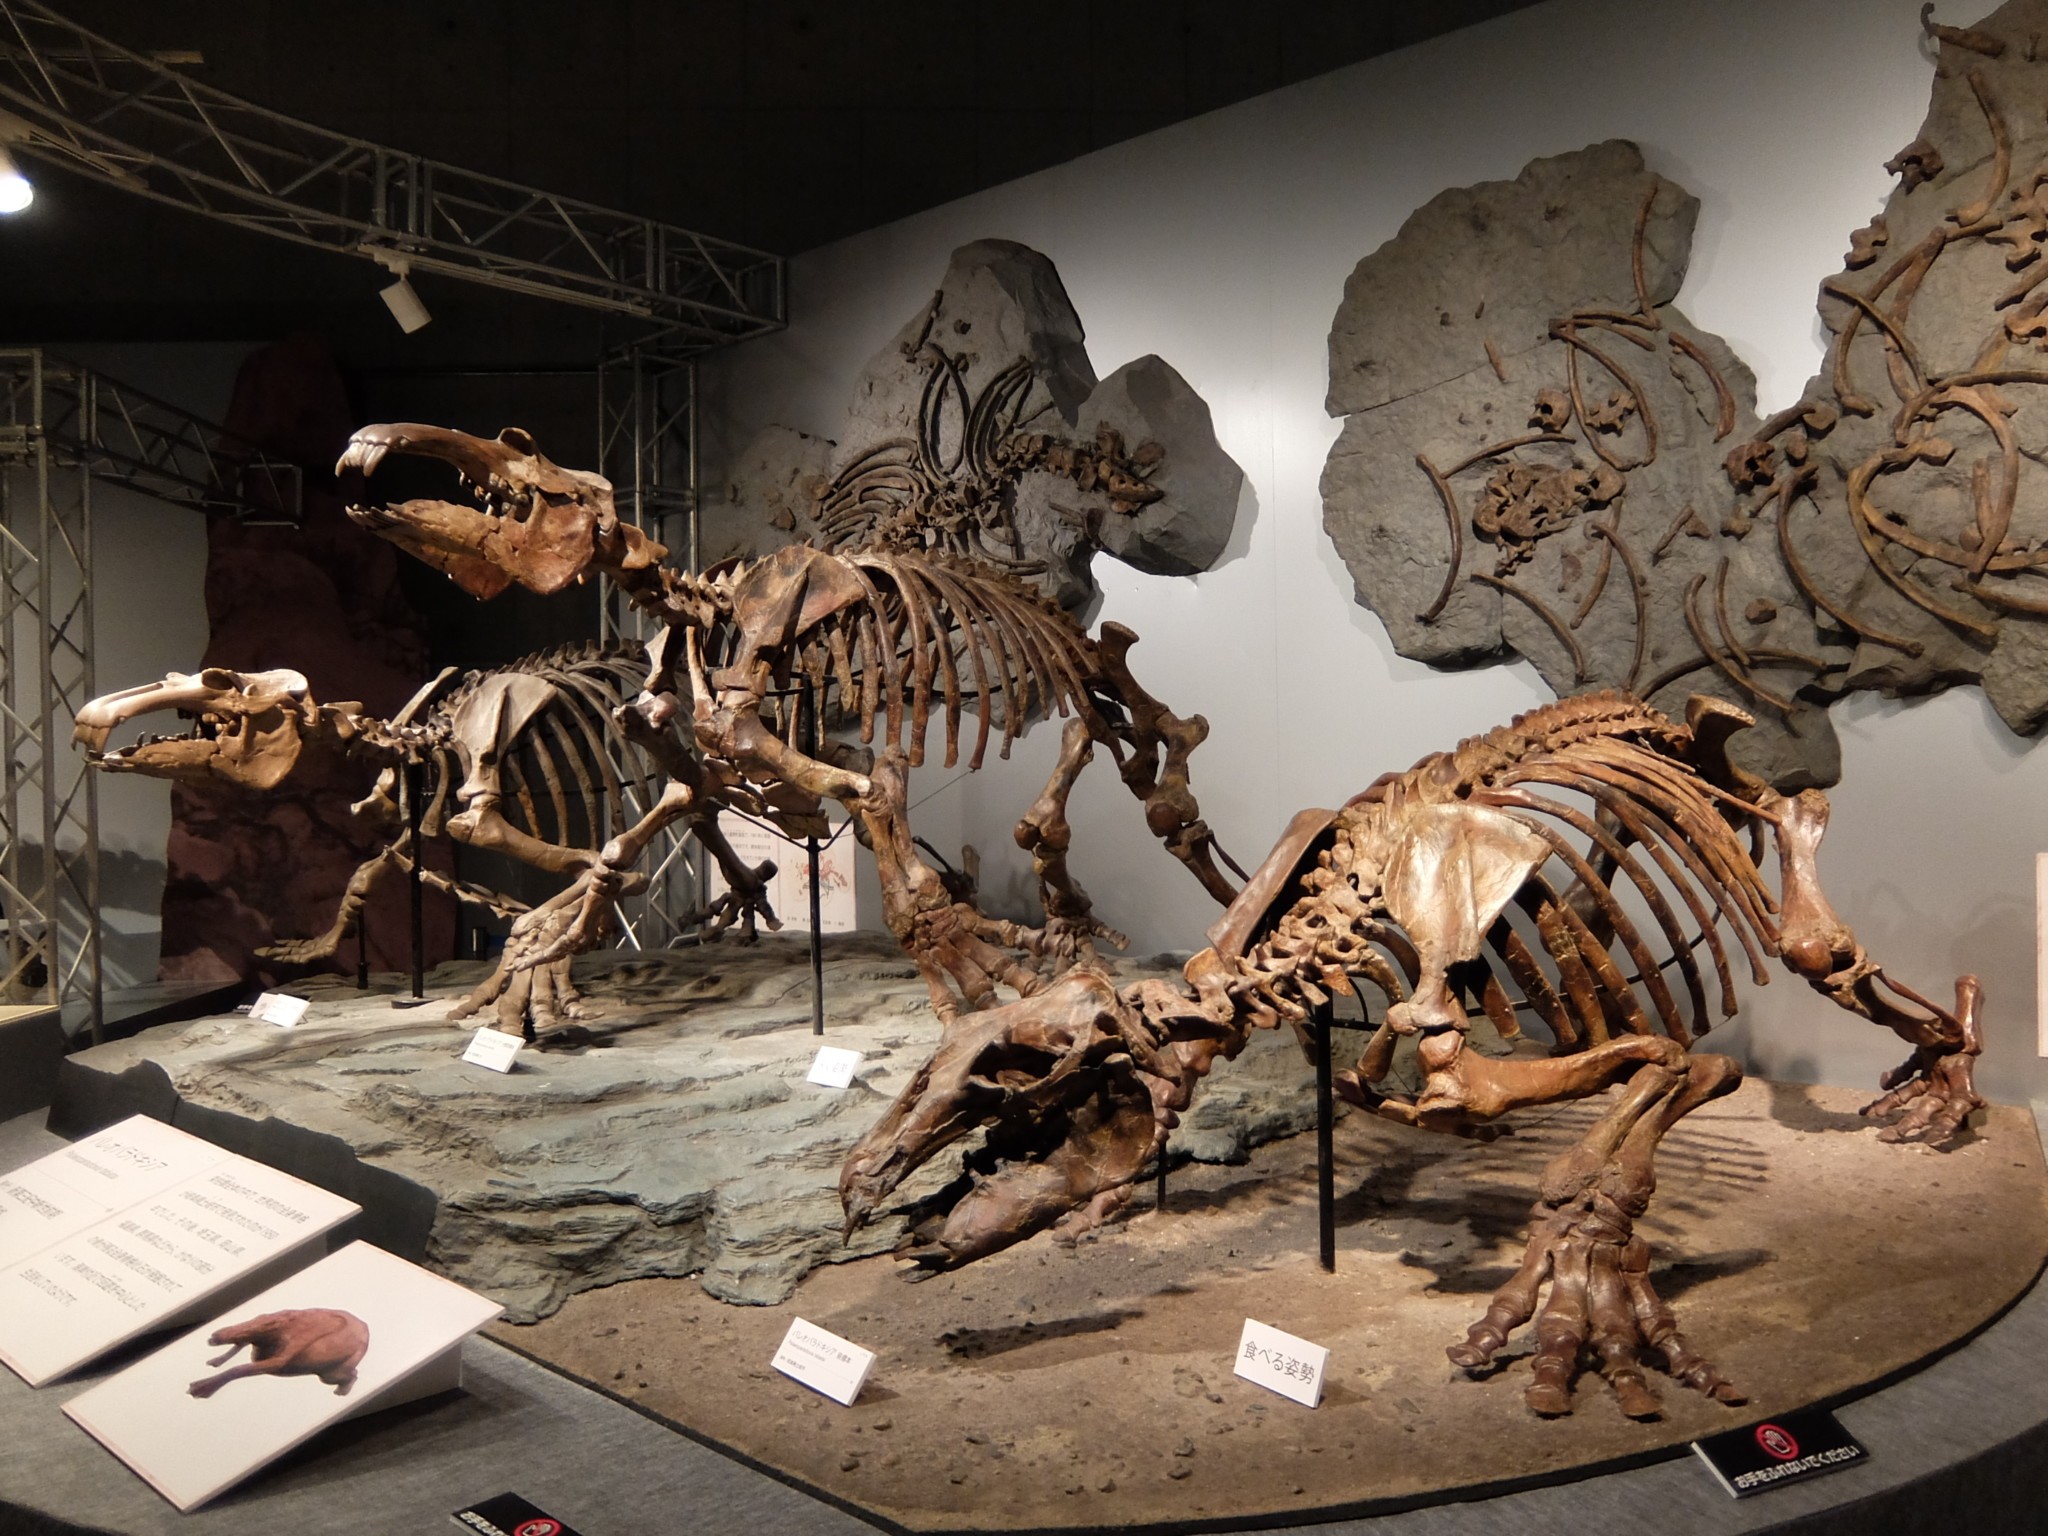 太古の哺乳類展 日本の化石でたどる進化と絶滅